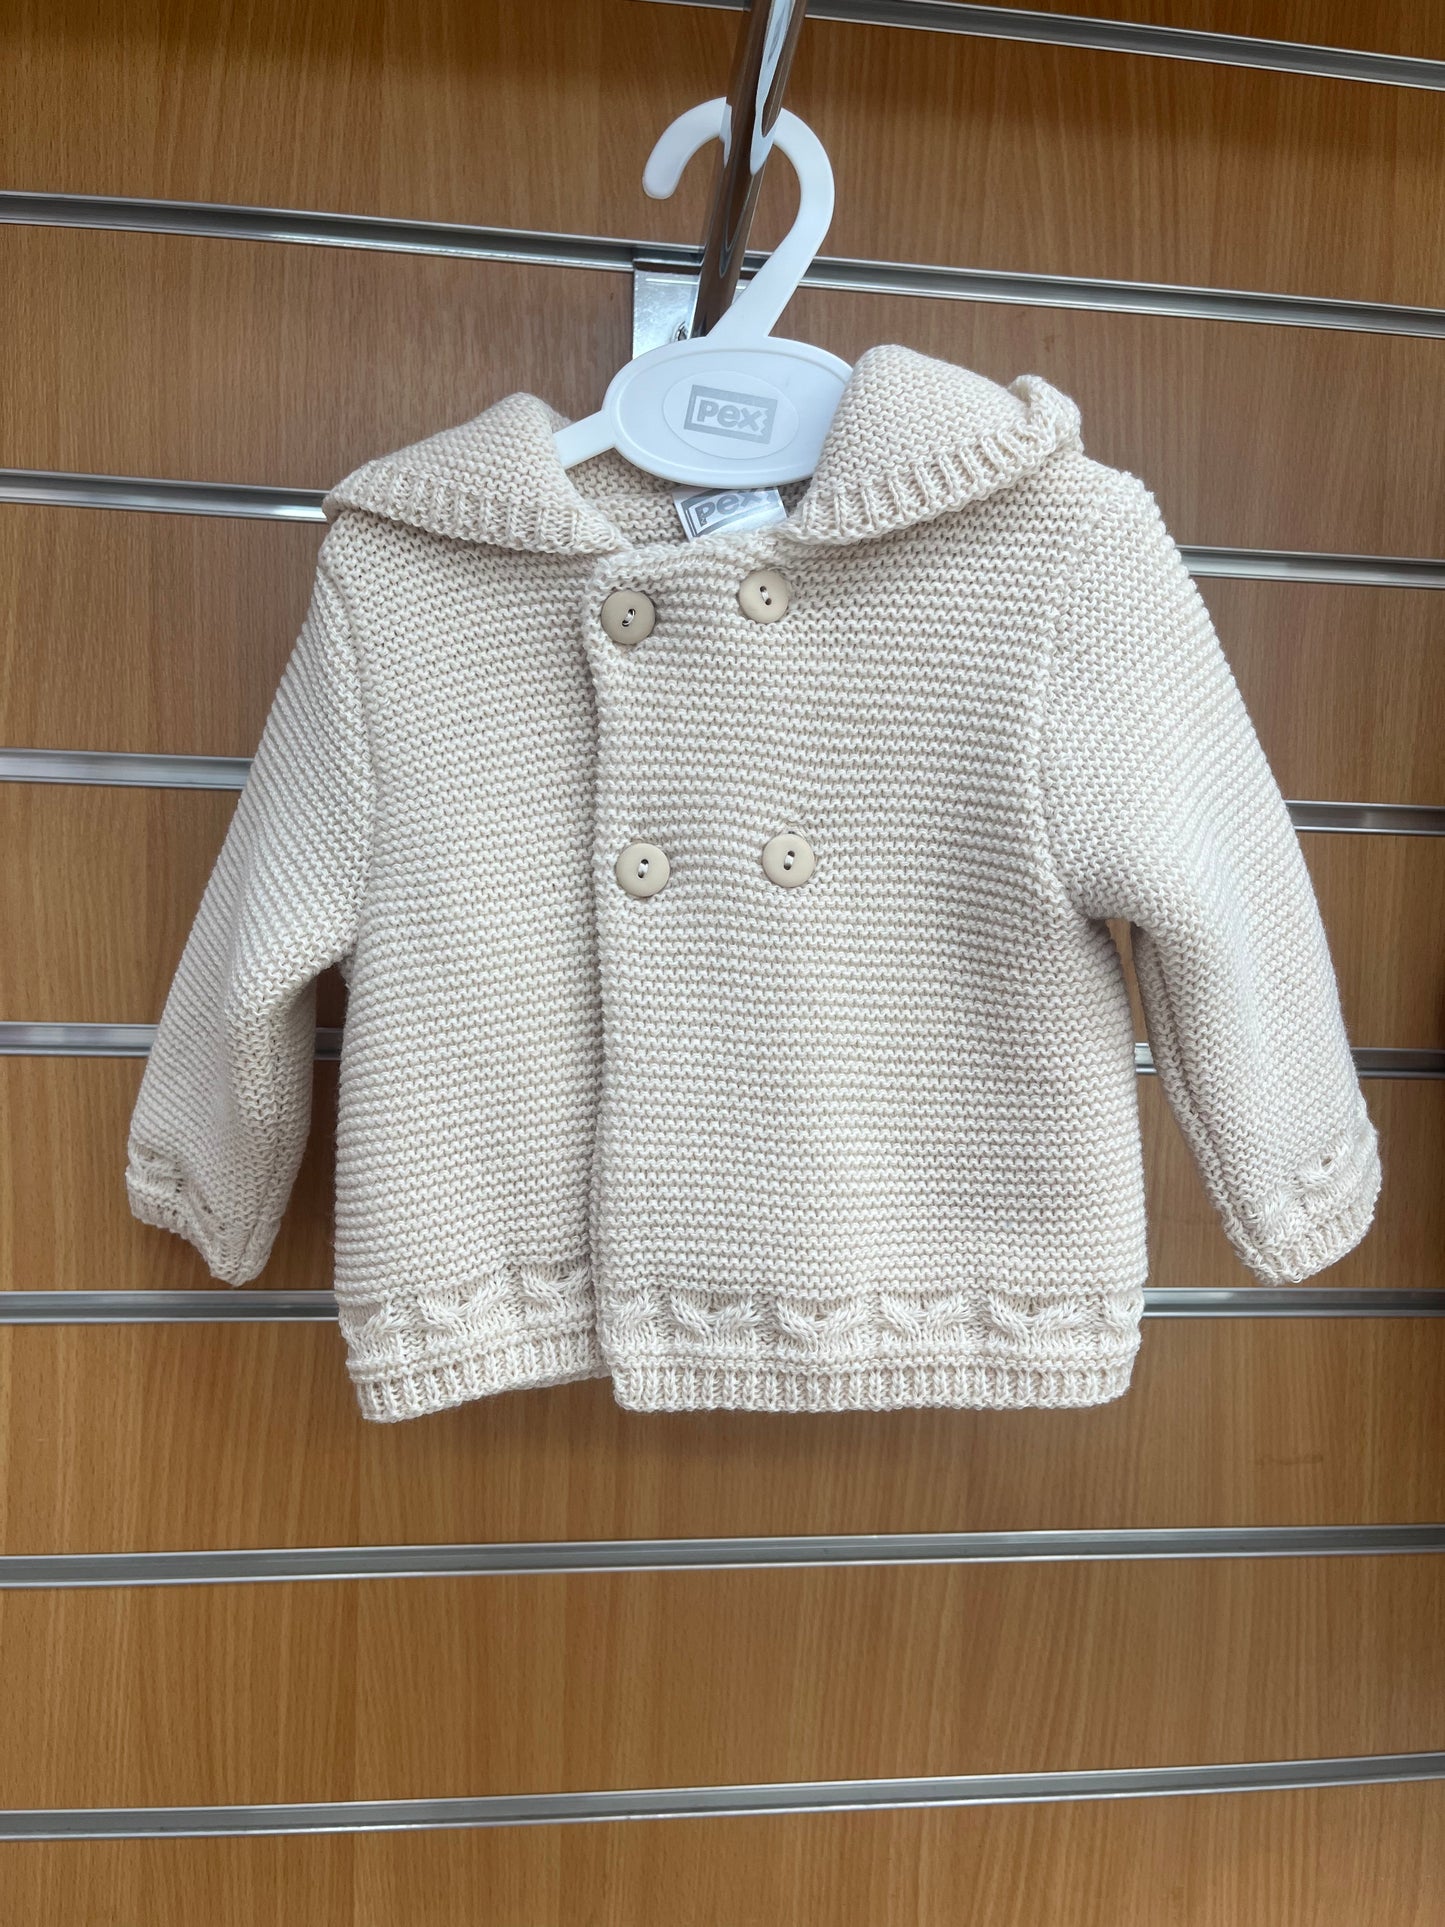 Cream knitted pram coat